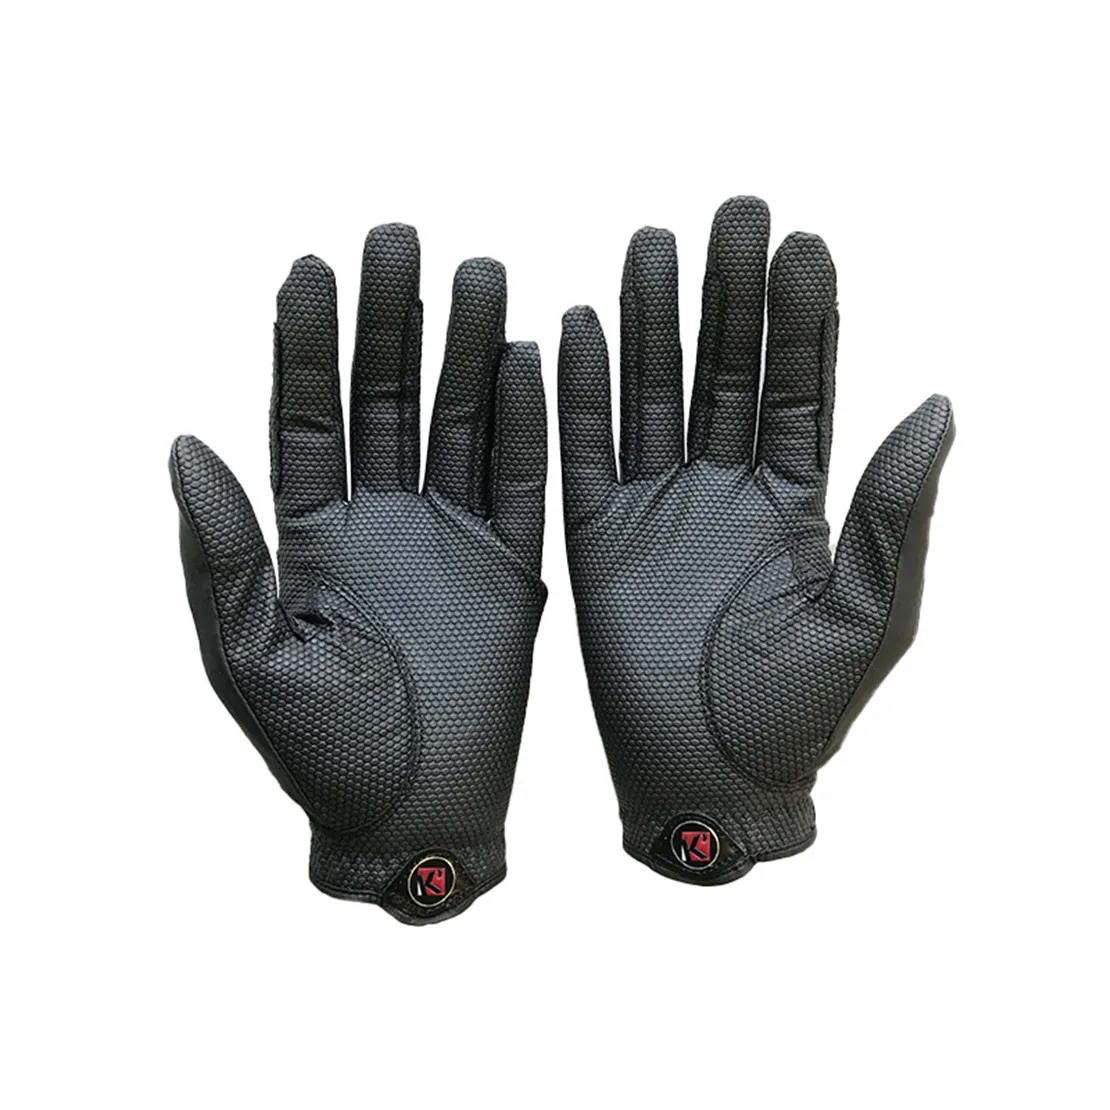 Функциональные защитные кожаные перчатки для верховой езды оптом